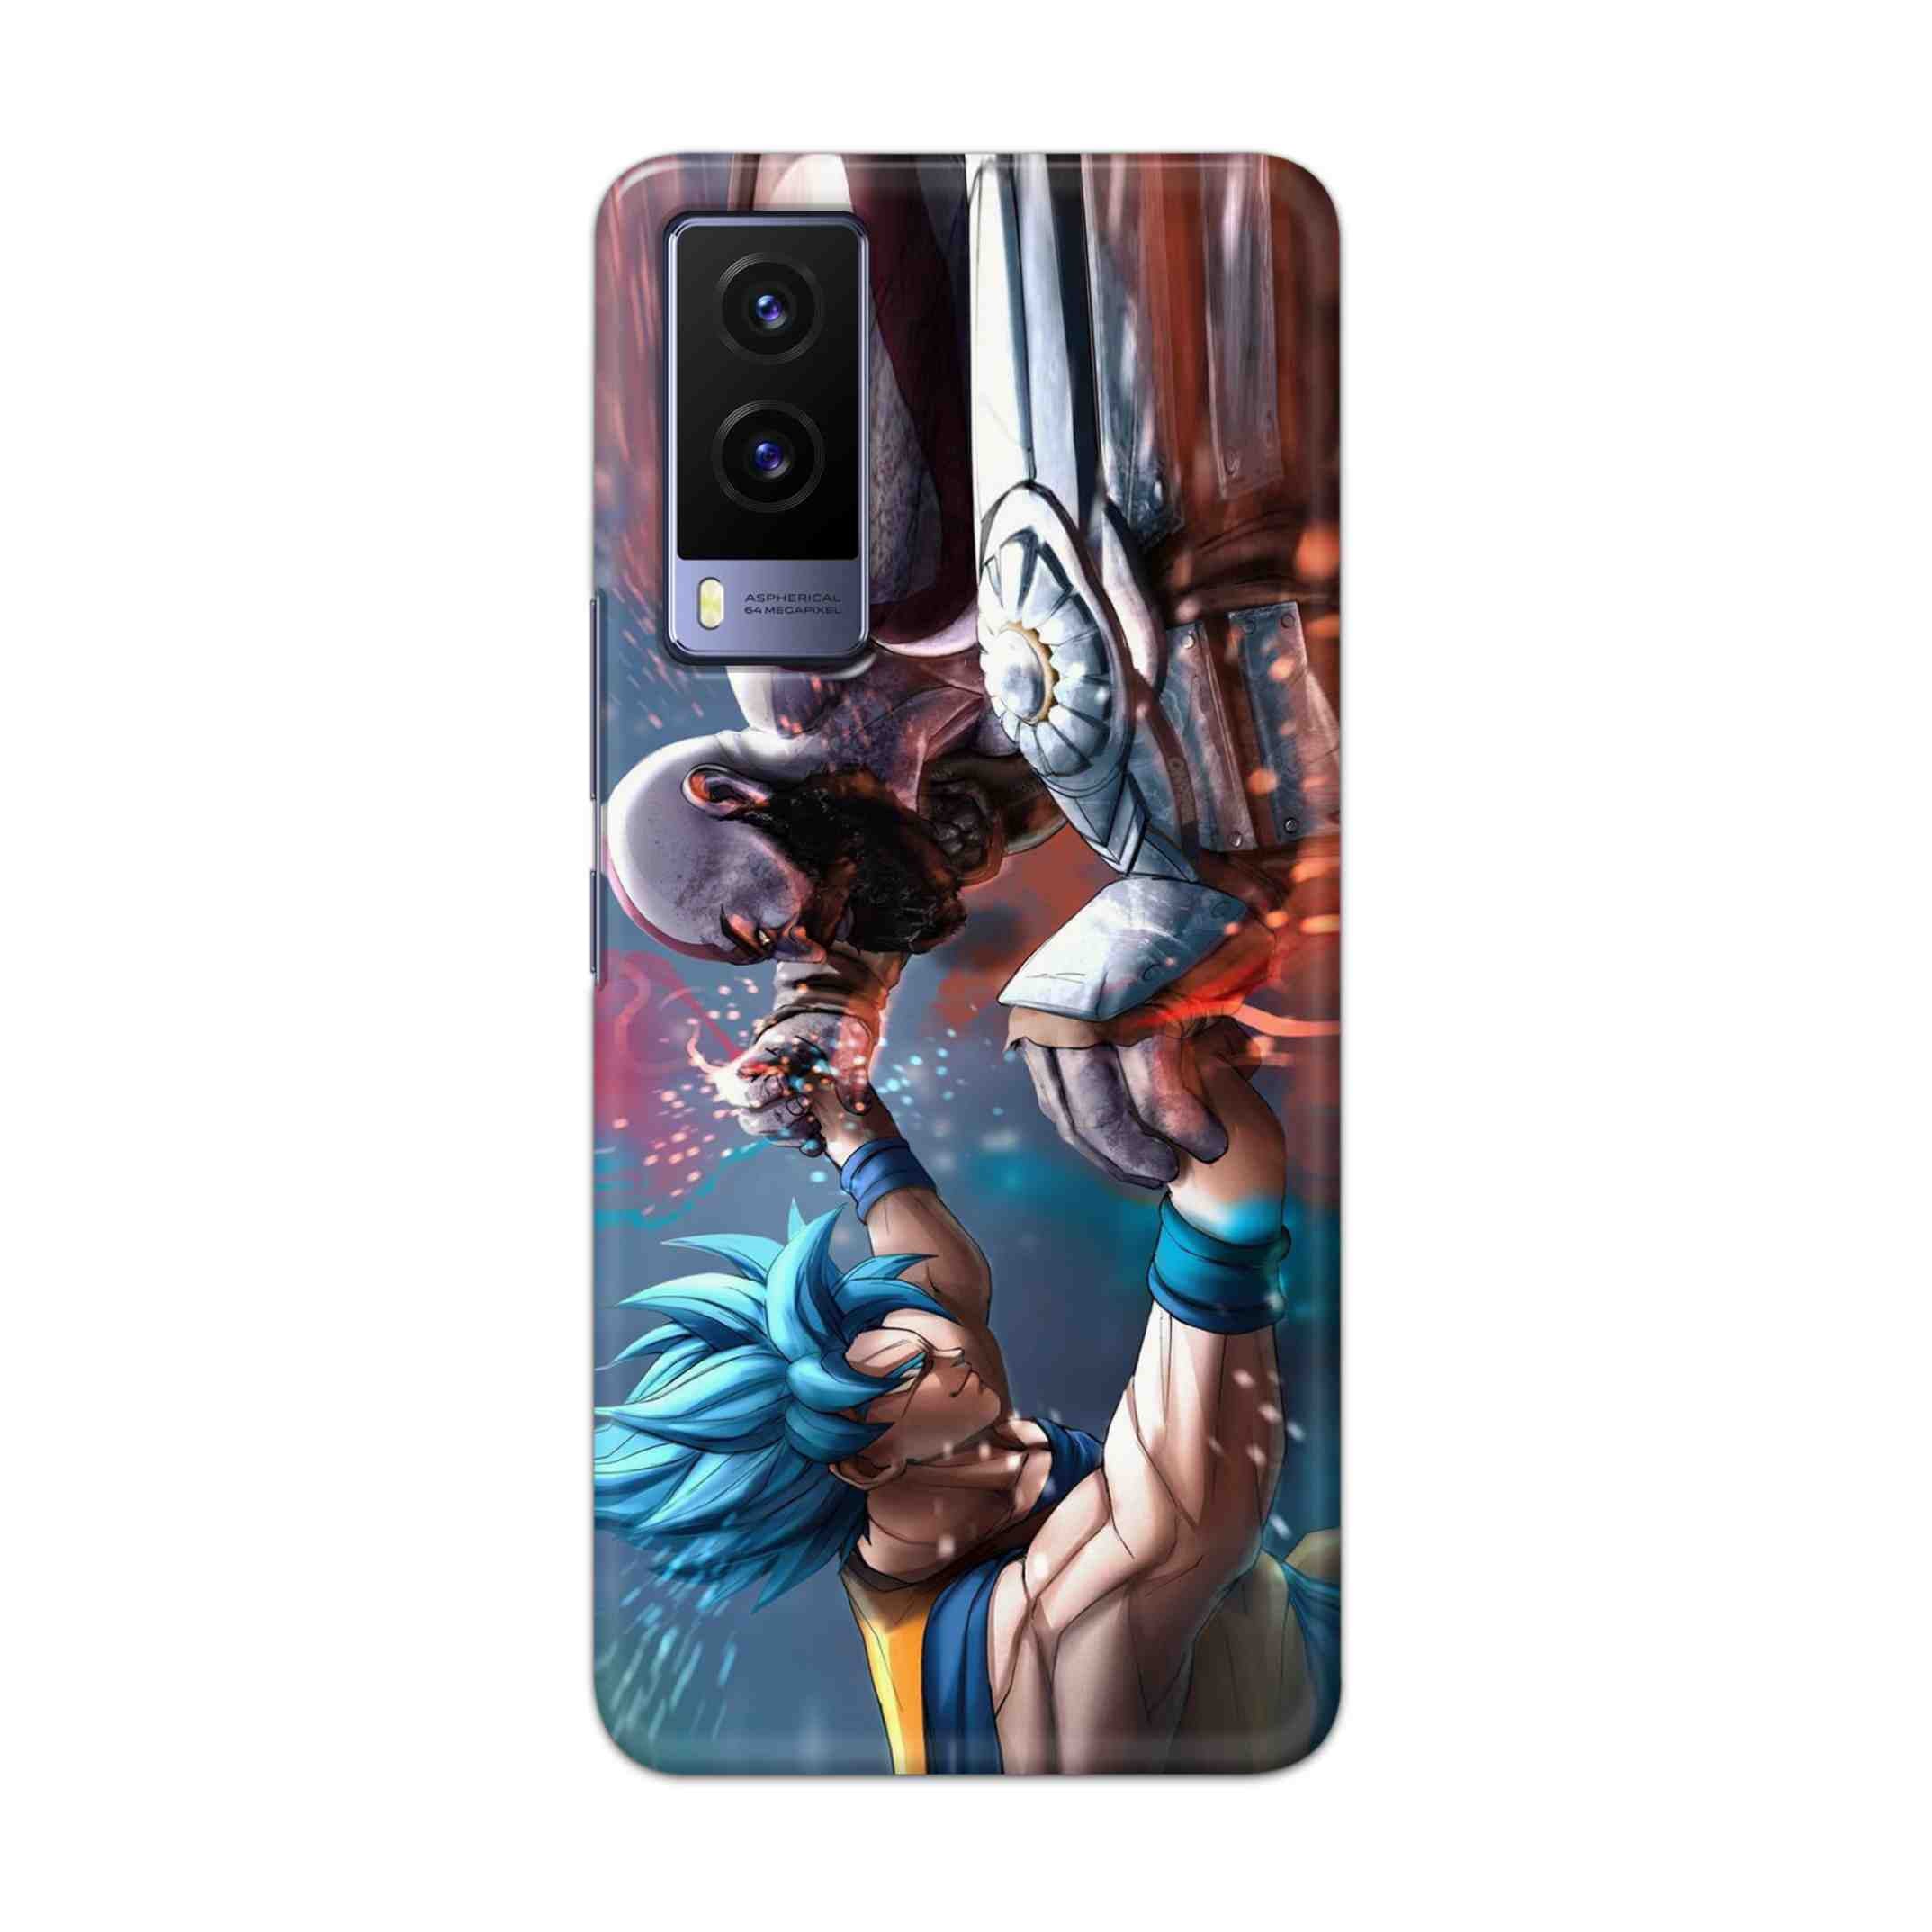 Buy Goku Vs Kratos Hard Back Mobile Phone Case Cover For Vivo V21e 5G Online